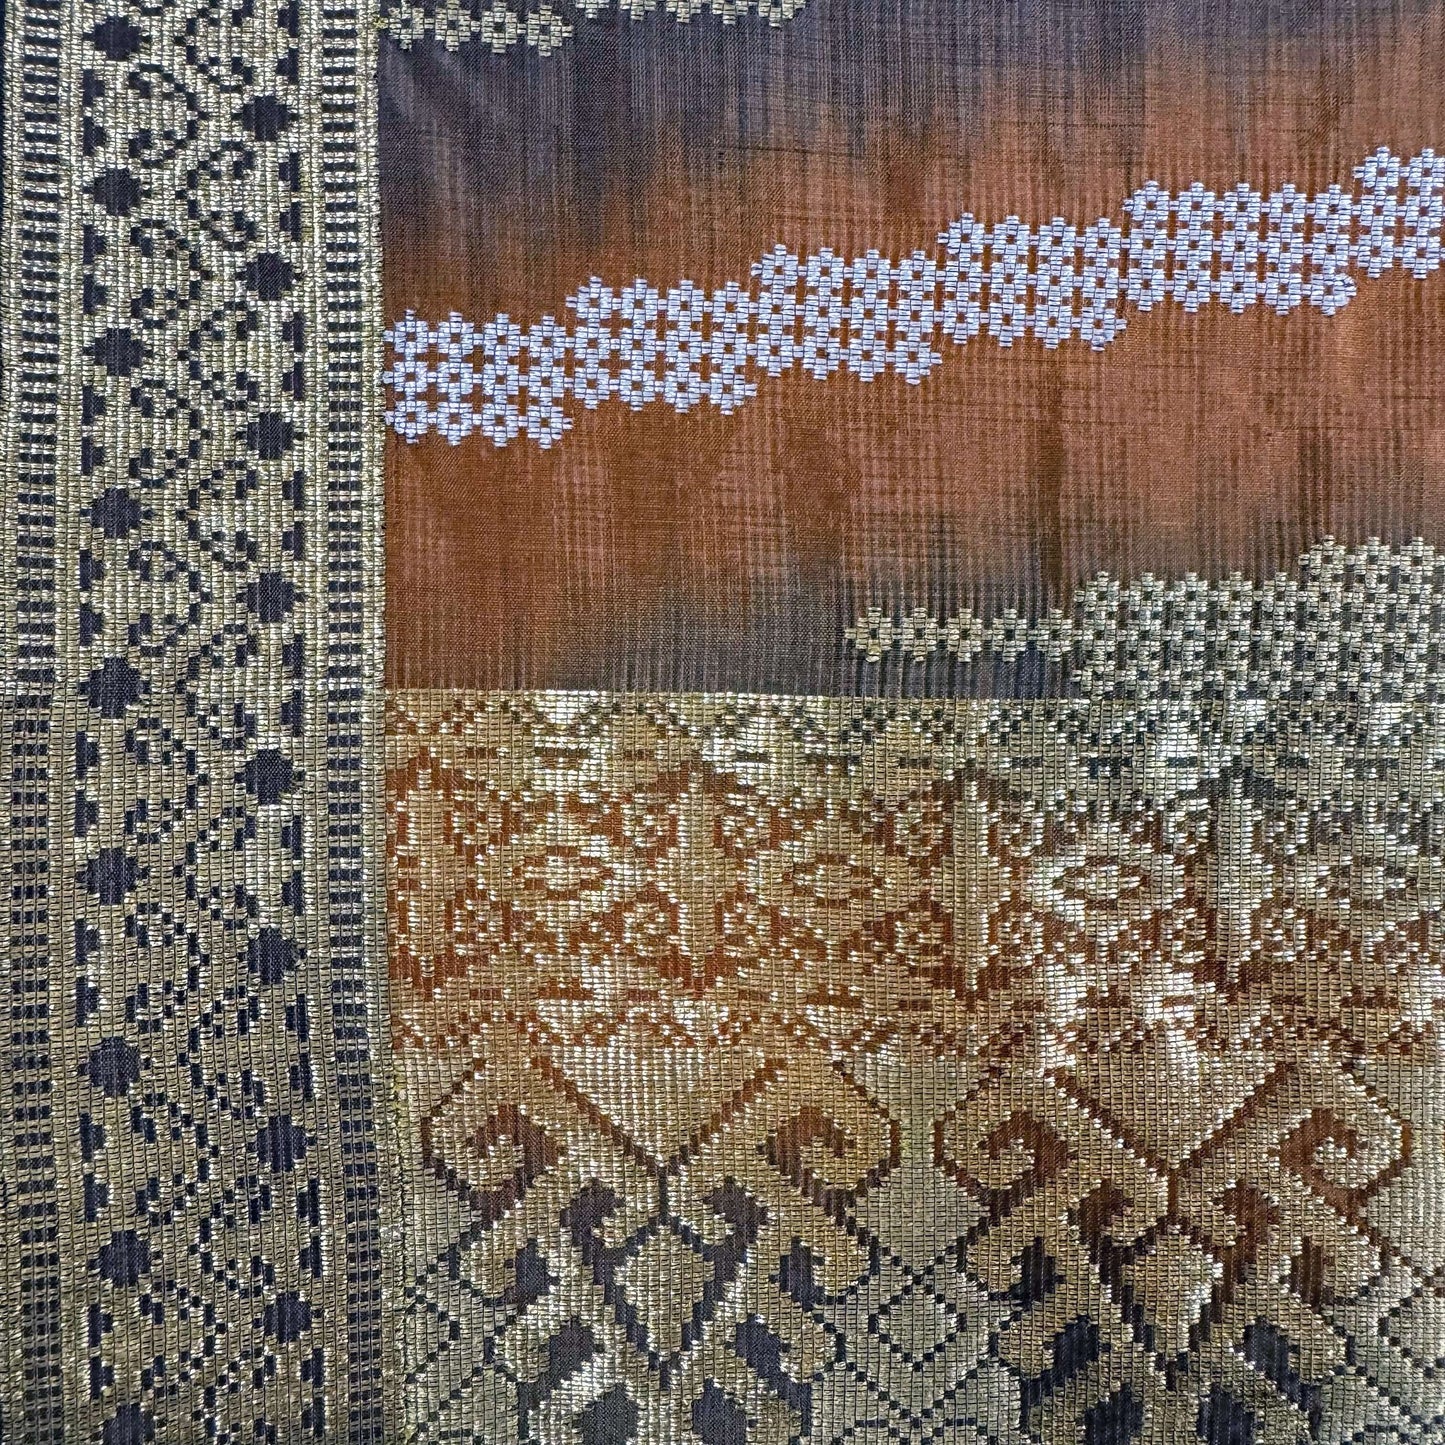 Saribas handwoven silk songket sampin textile